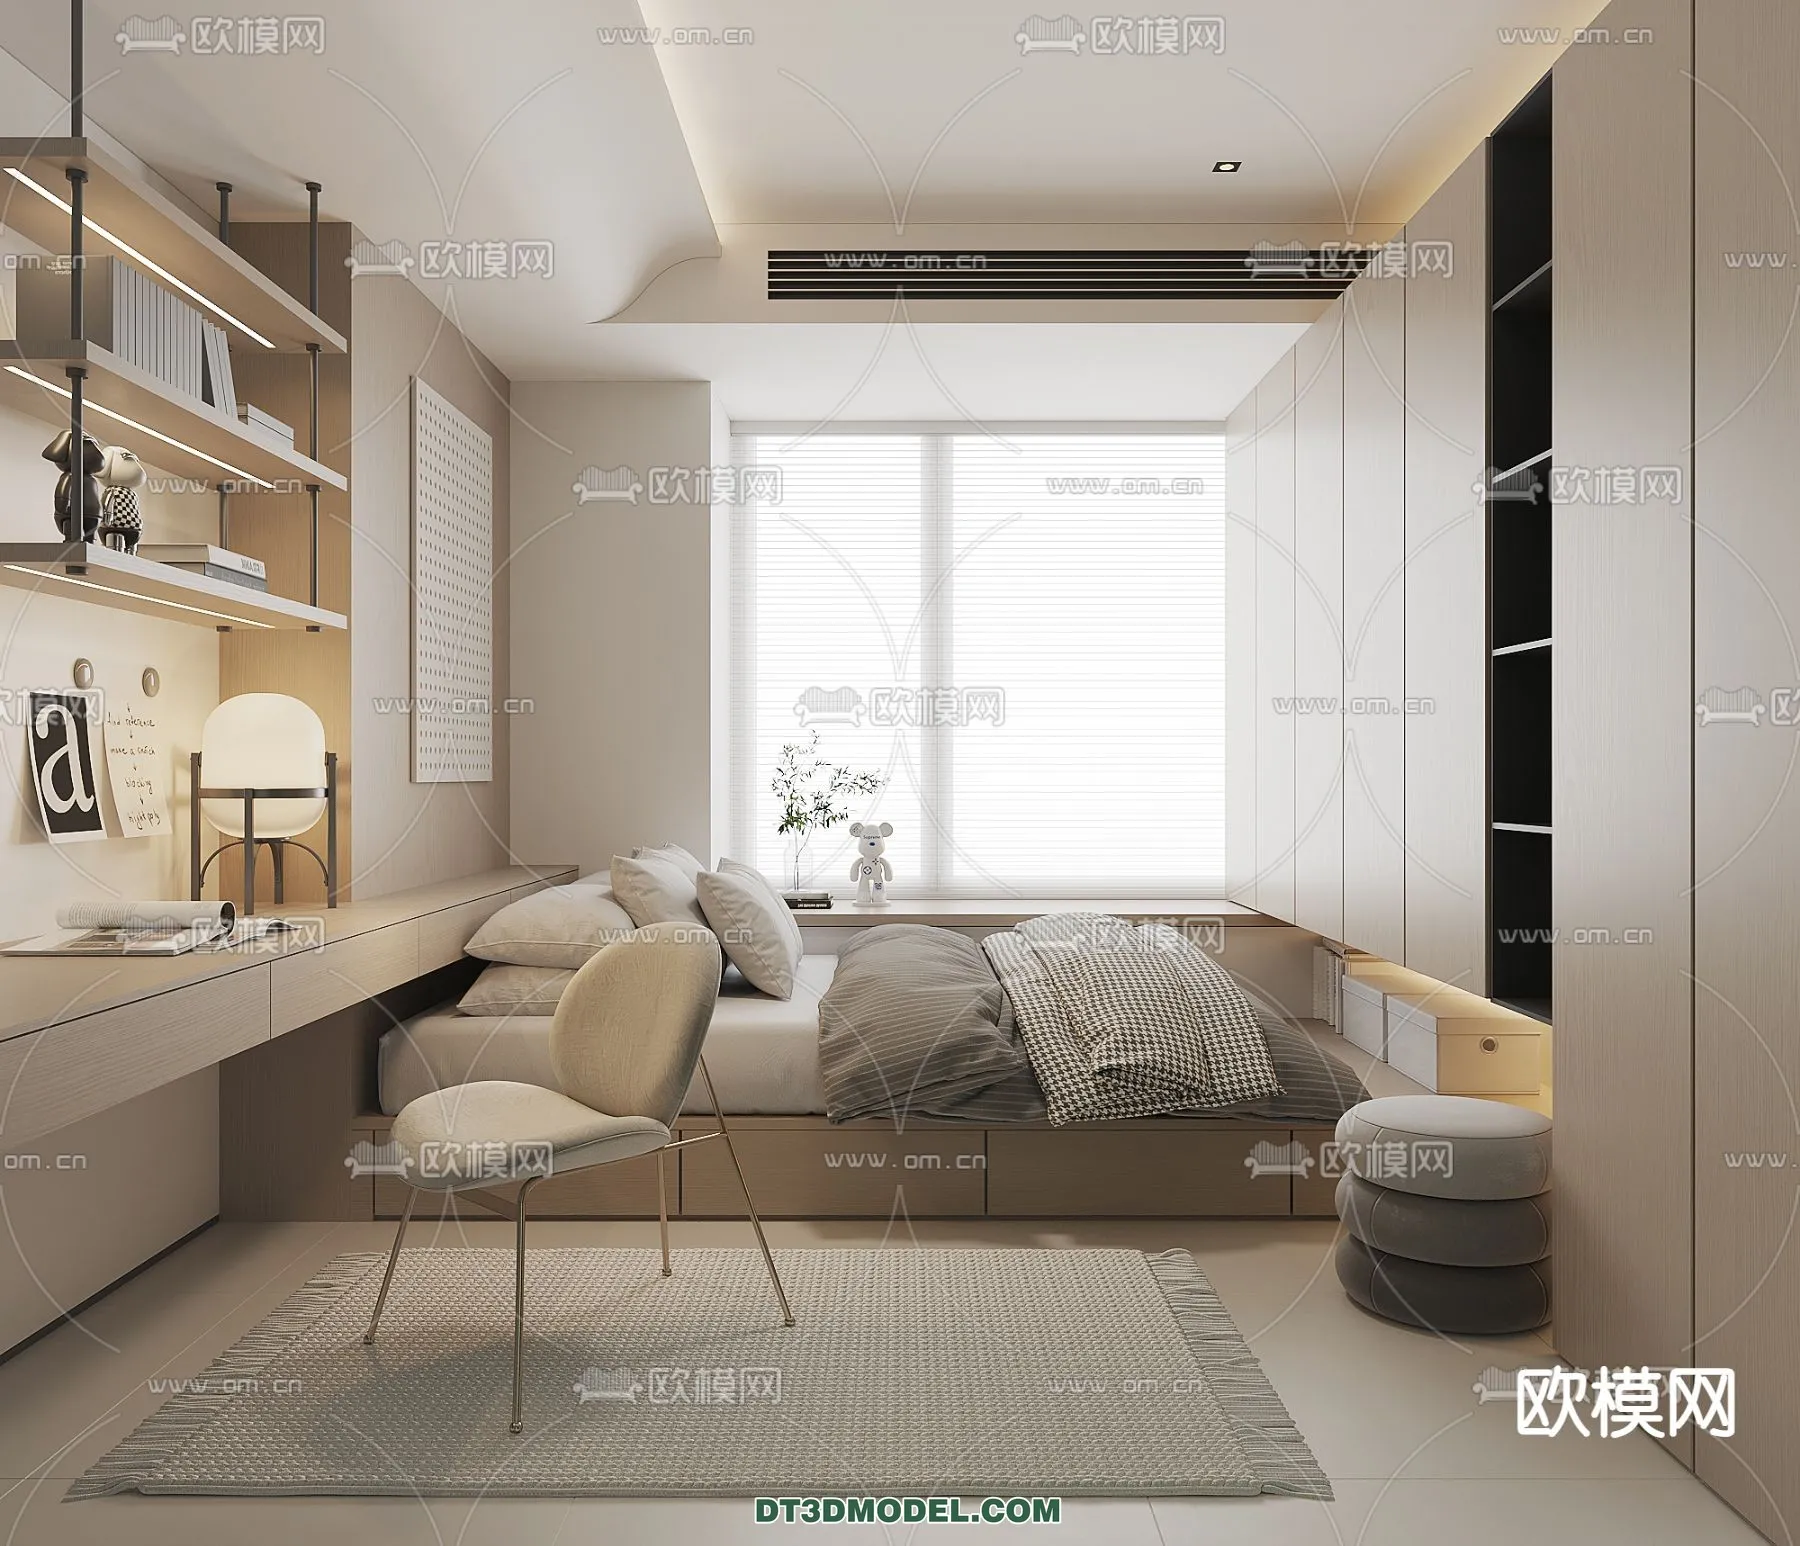 Tatami Bedroom – Japan Bedroom – 3D Scene – 058